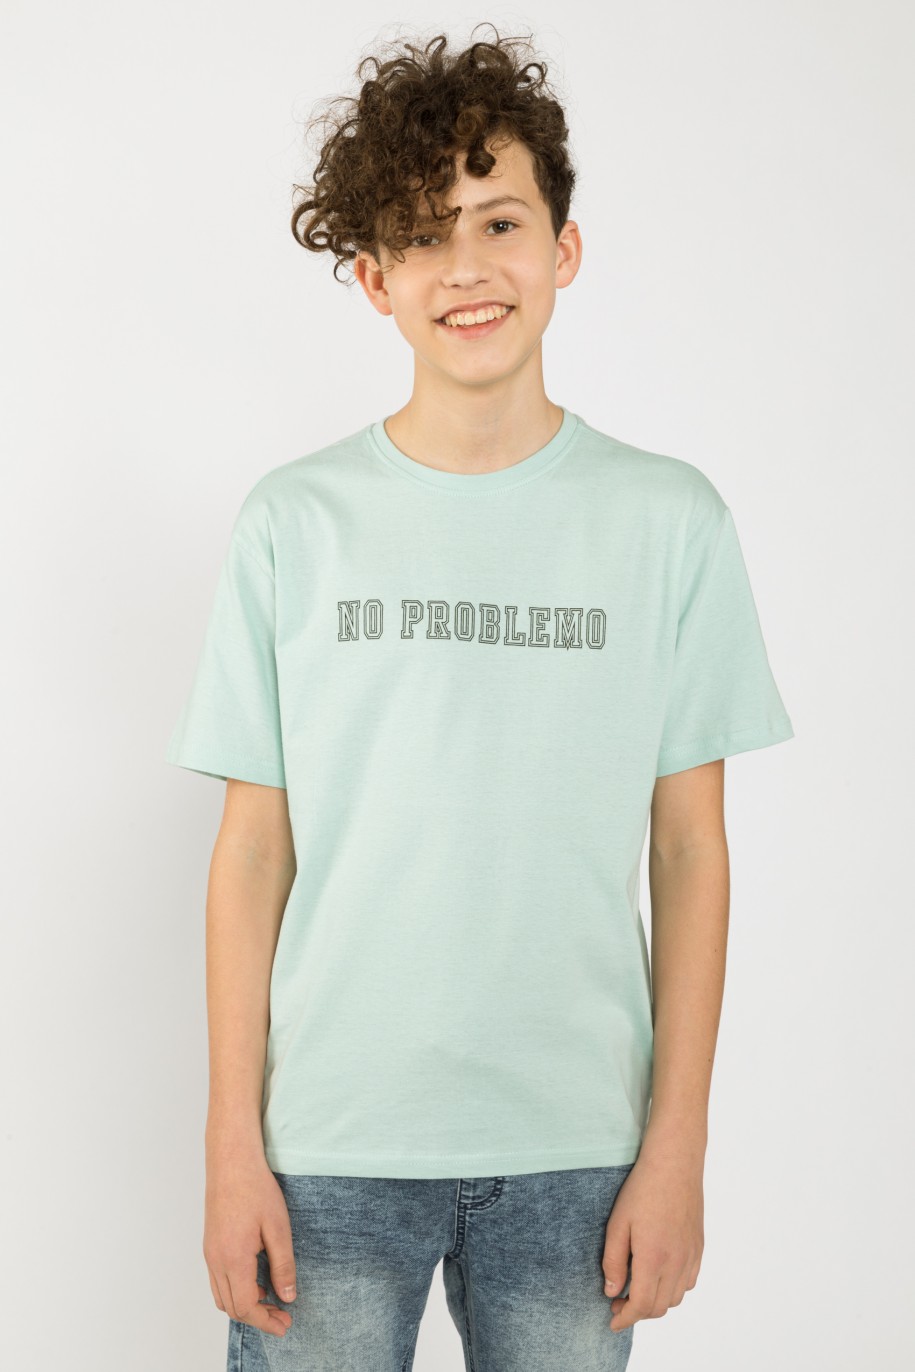 Miętowy t-shirt dla chłopaka NO PROBLEMO - 33061